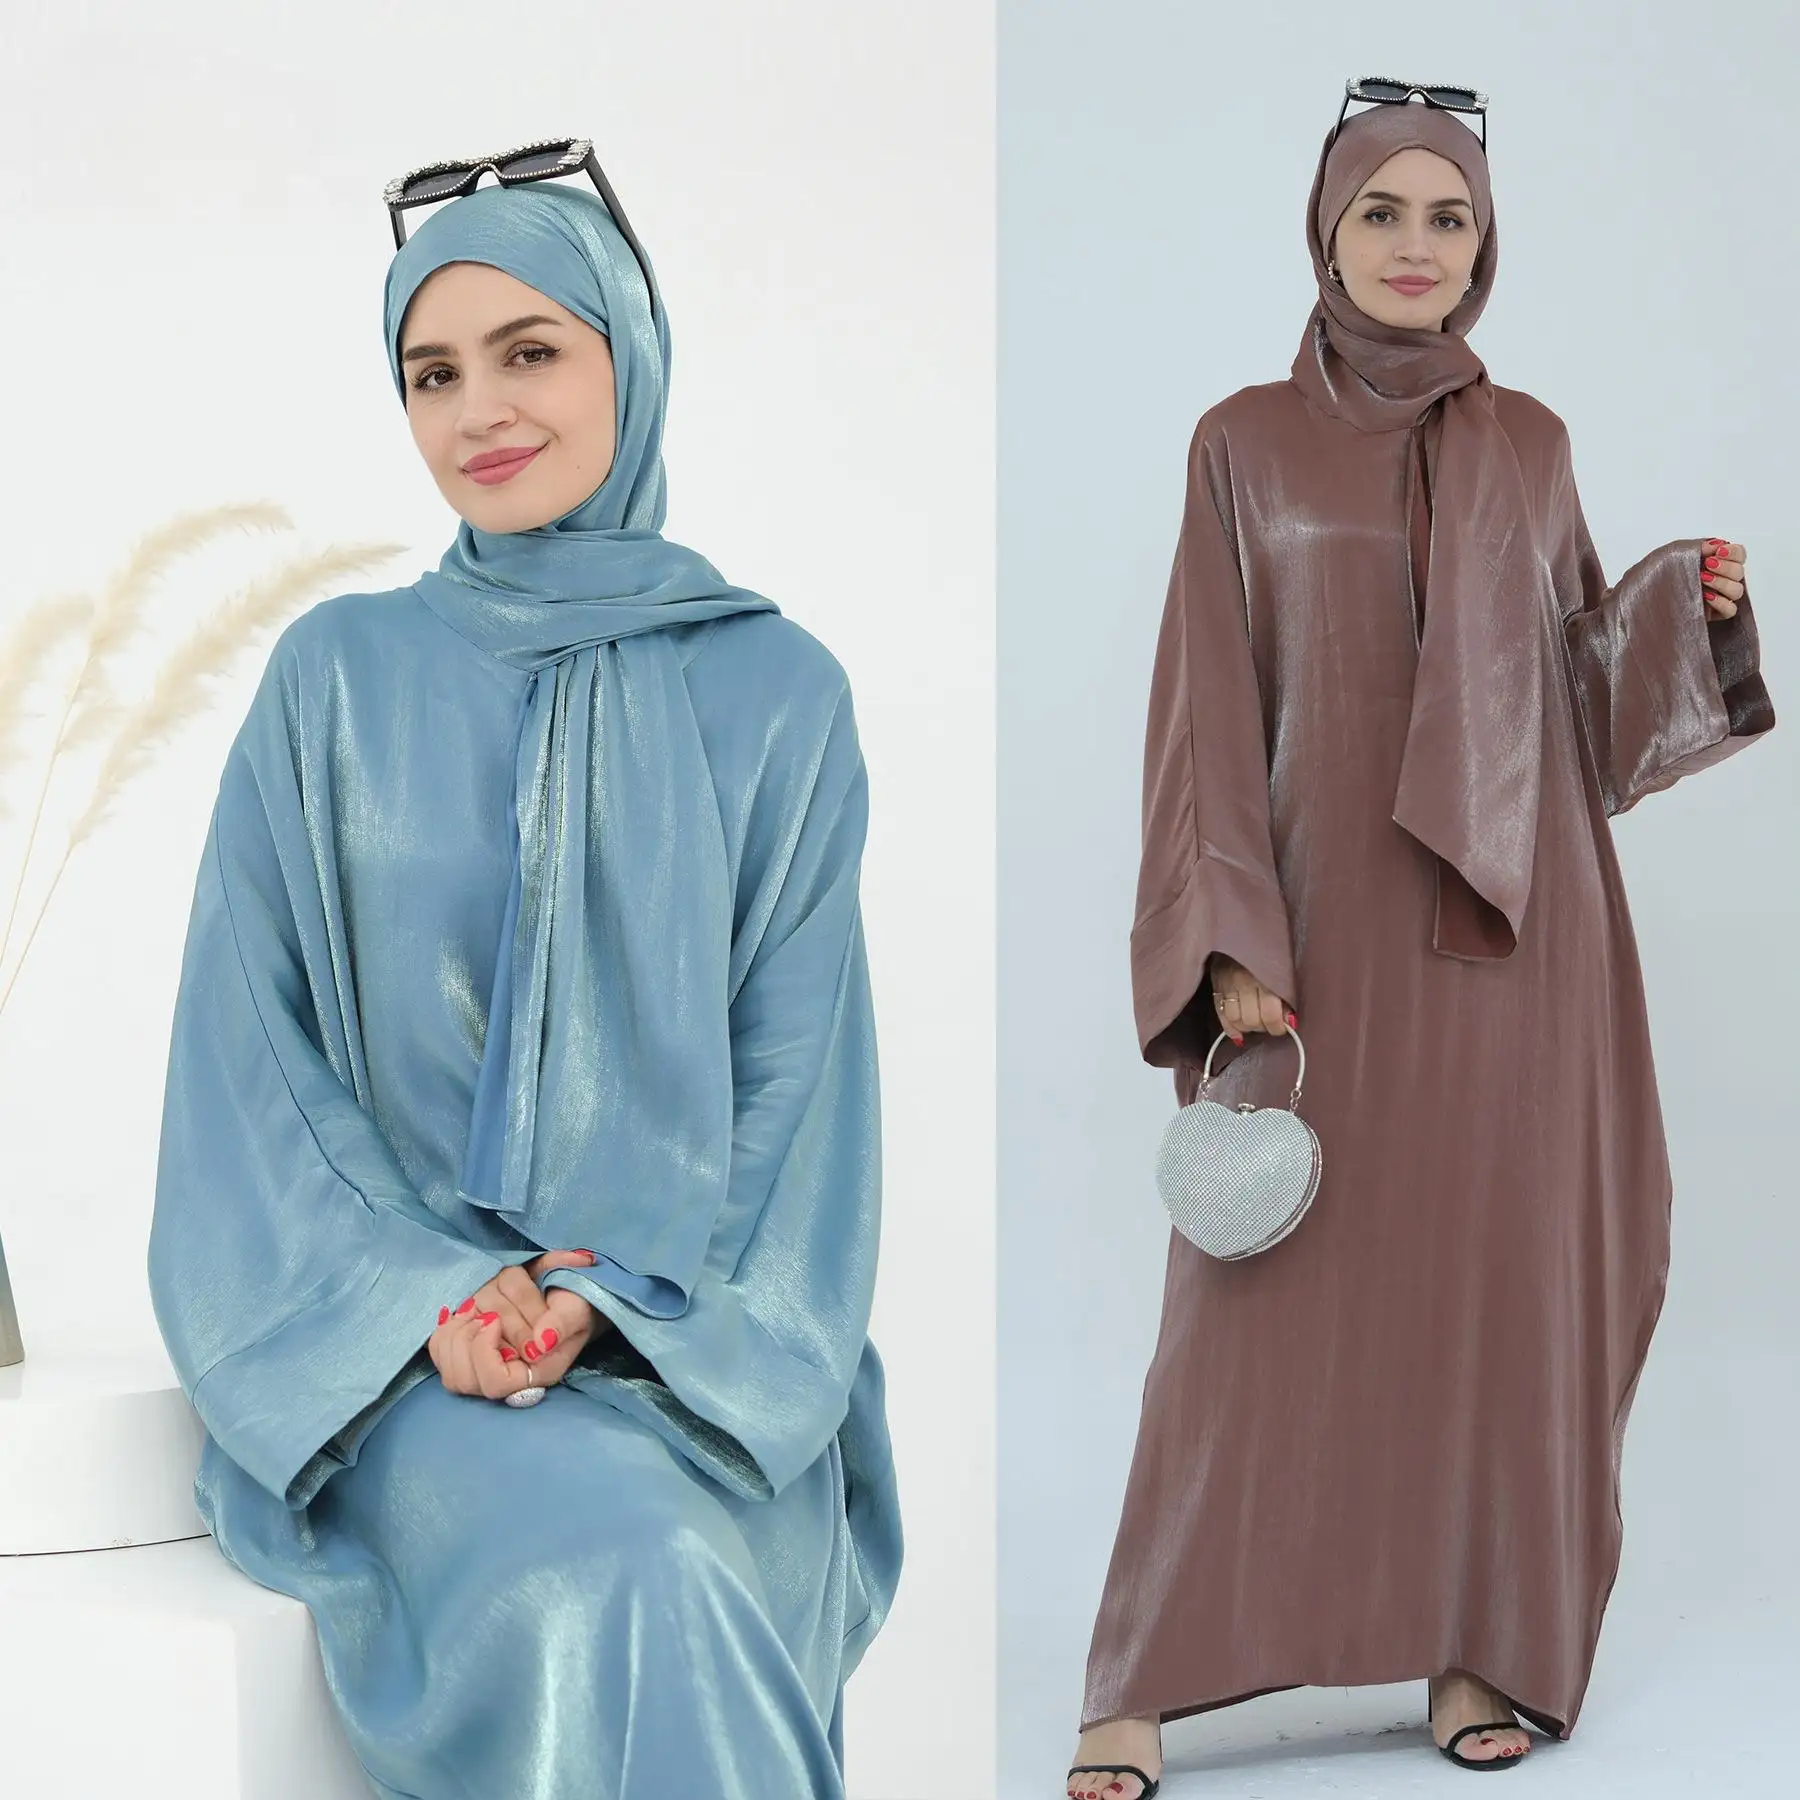 408 Shinny beliebte damen kleid von neuestem islamischem kleid satin kaftan designs für damen & damen abaya kleid